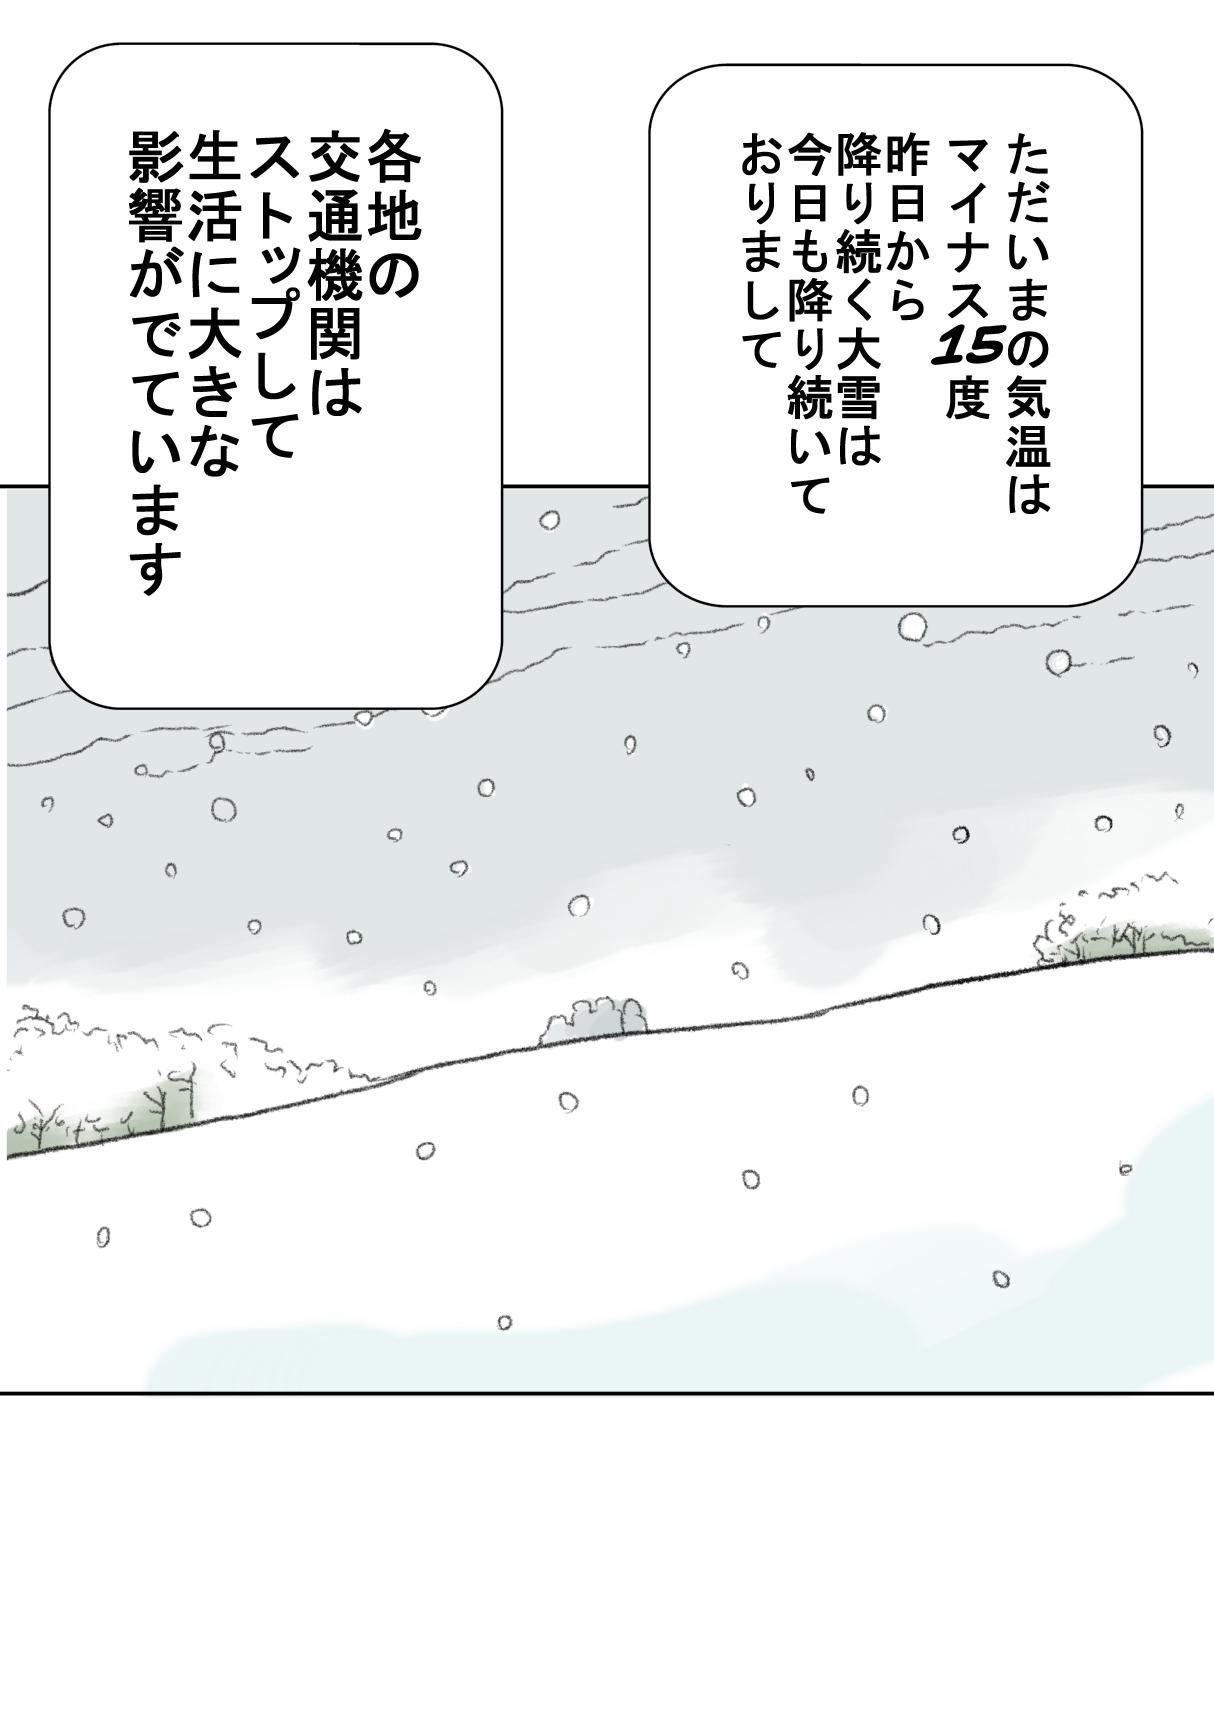 Yuki | Snowing 2